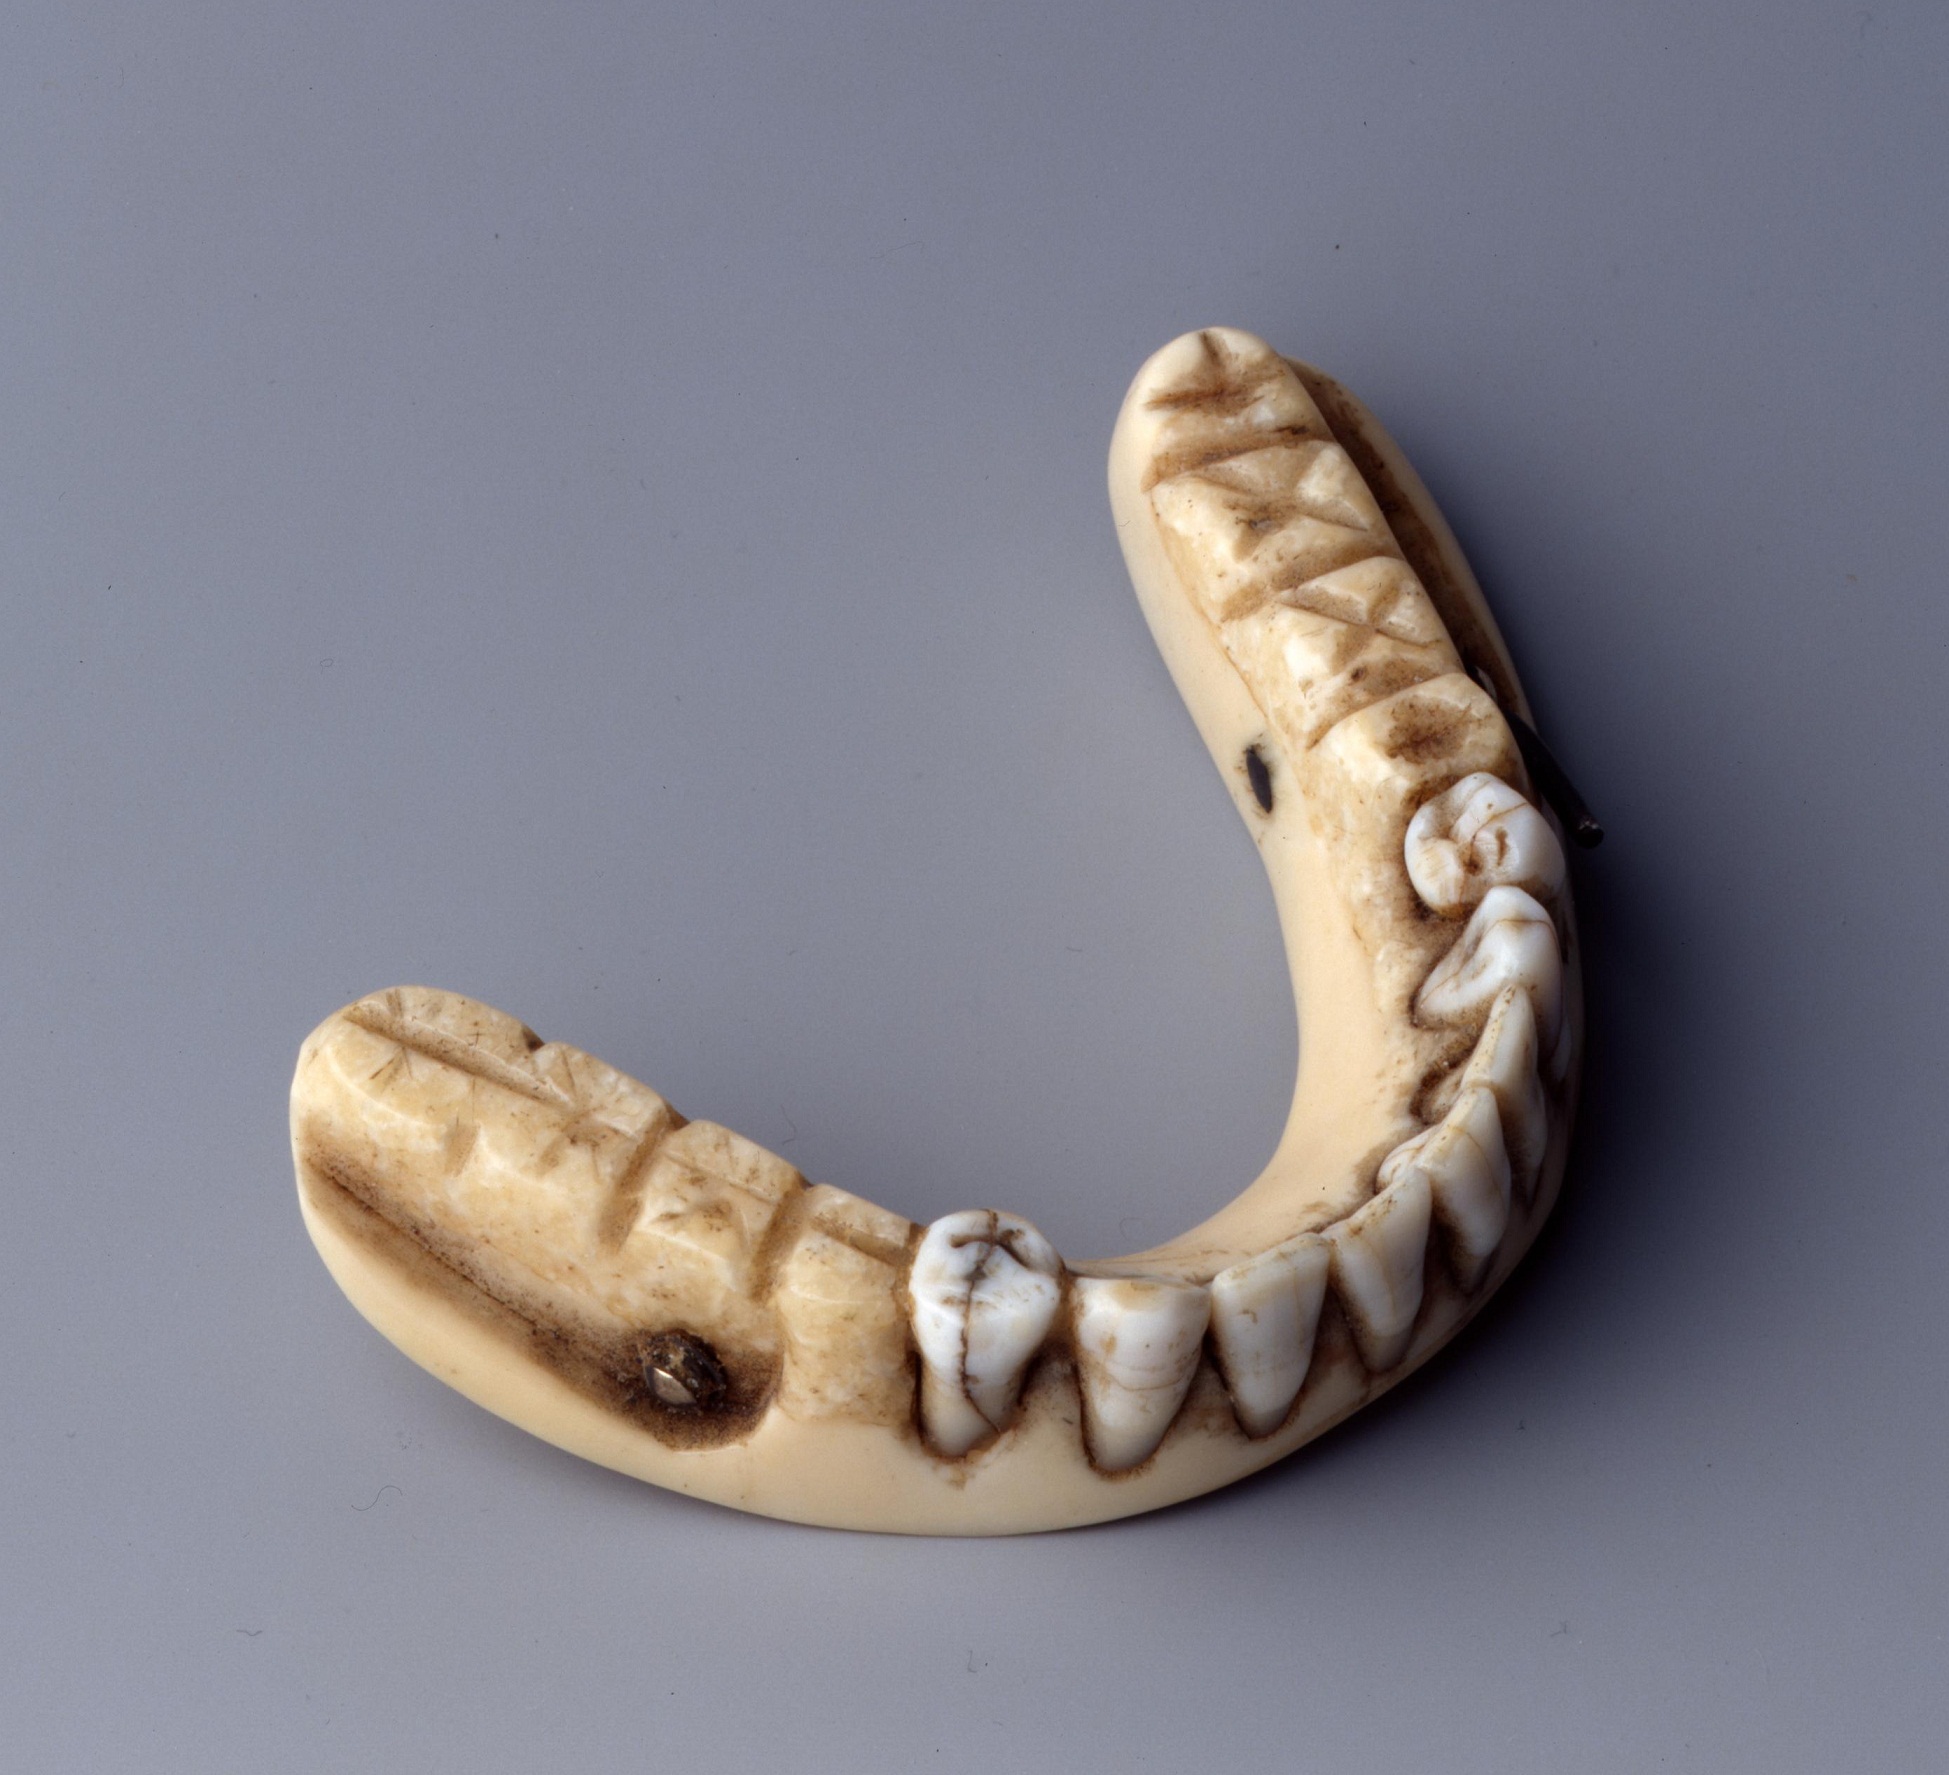 Untere Vollprothese, so genannte Waterloo-Zähne